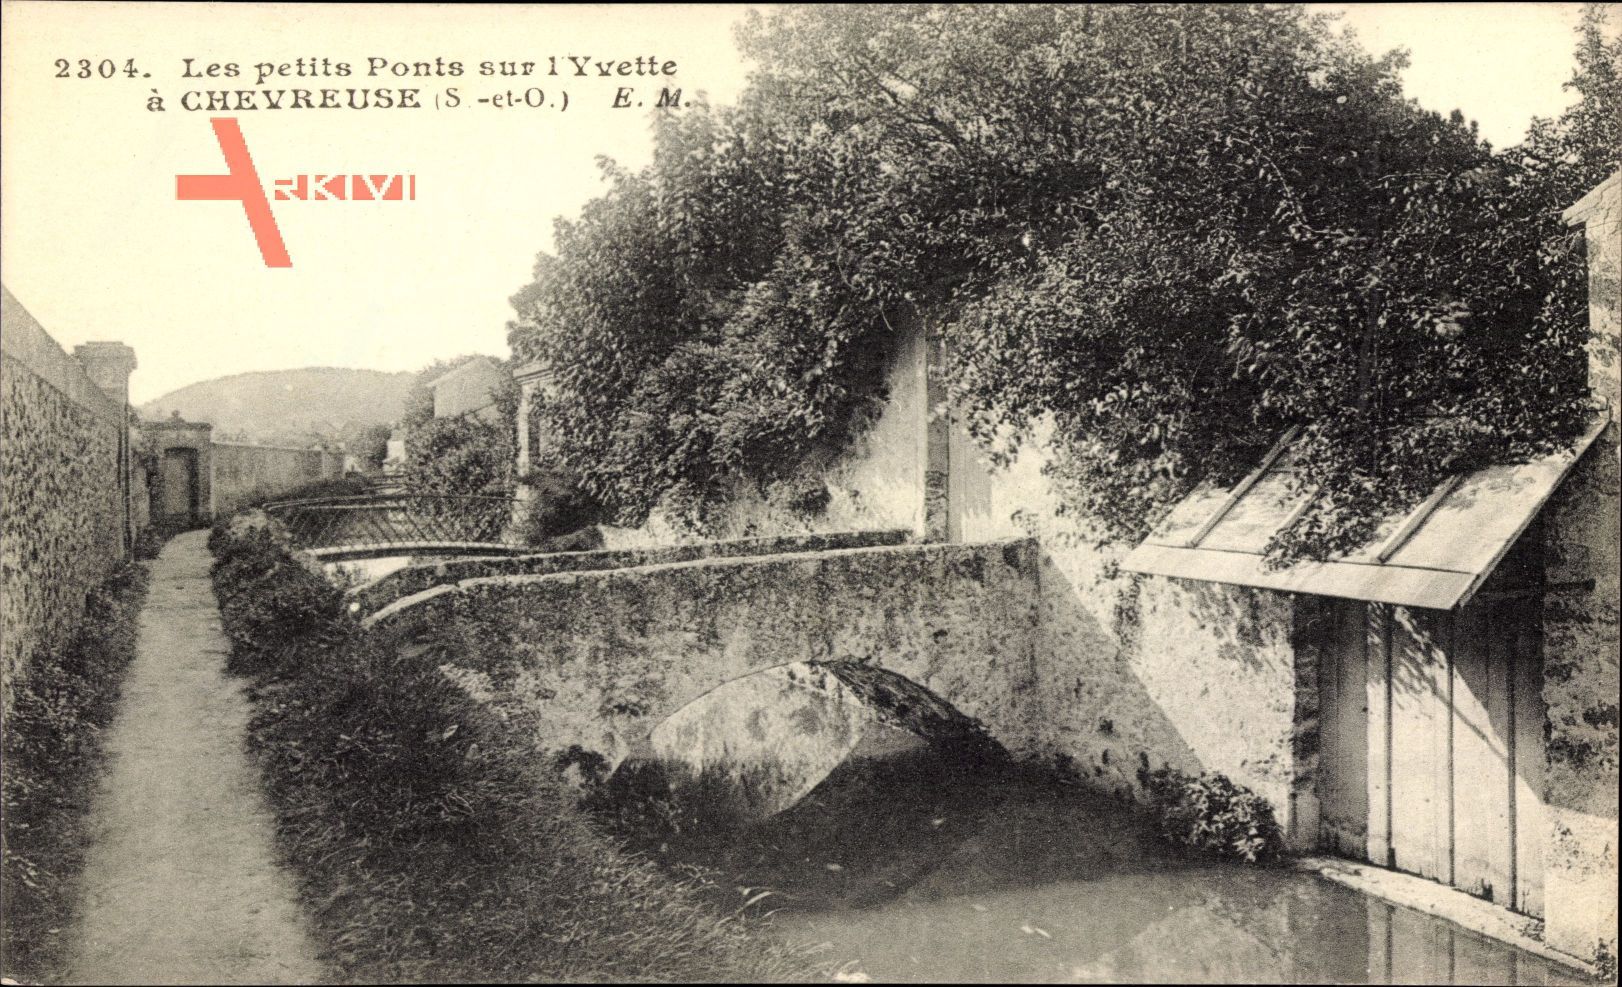 Chevreuse Seine et Oise Yvelines, Les petits Ponts sur l'Yvette, Brücke